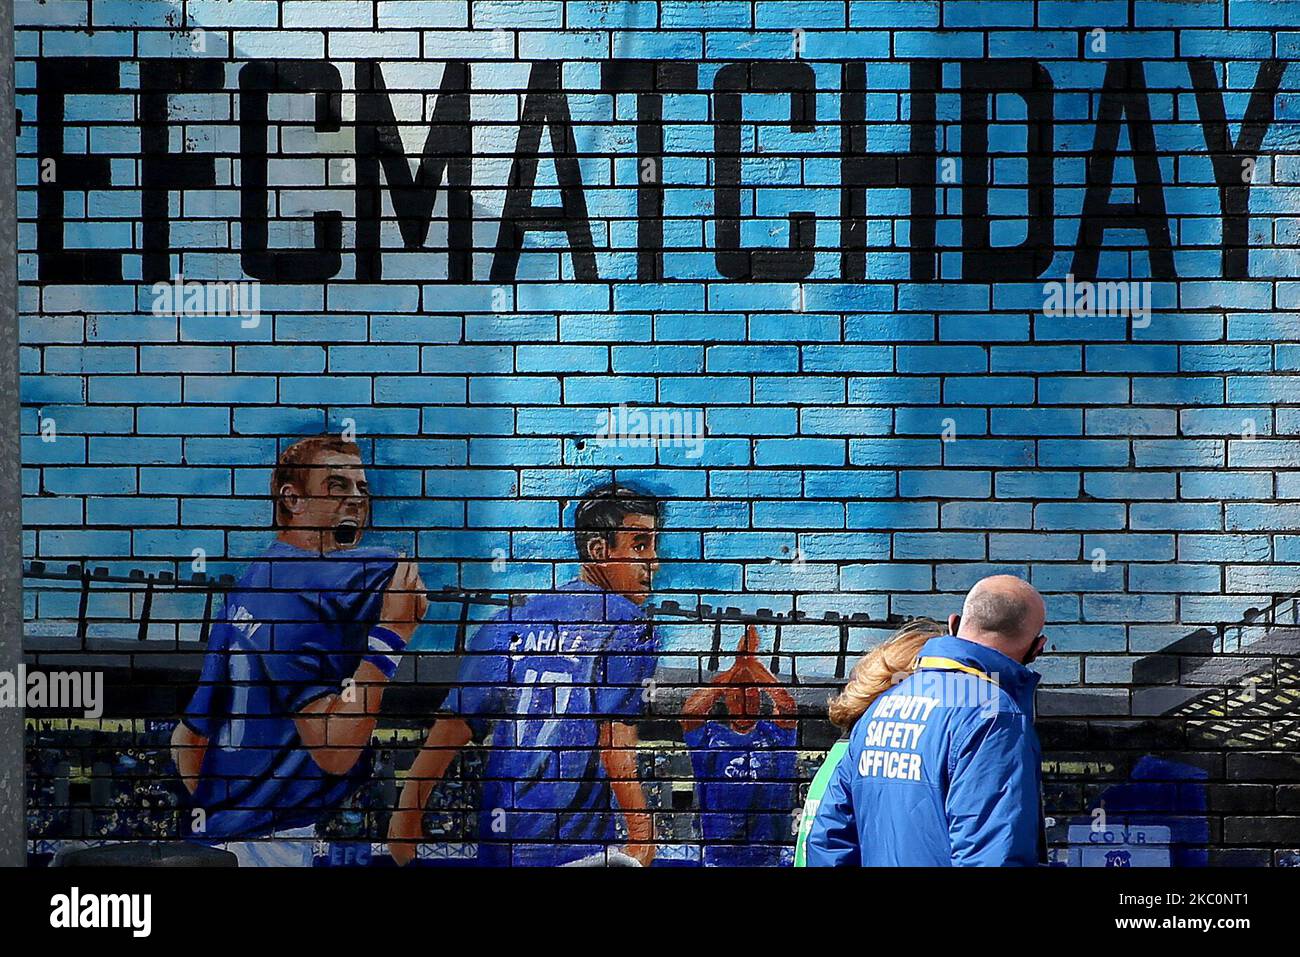 Vue extérieure générale d'une murale EFC lors du match de la coupe Vitality Women's FA entre Everton et Chelsea à Goodison Park, Liverpool, en Angleterre, le 27th septembre 2020. (Photo de Tim Markland/MI News/NurPhoto) Banque D'Images